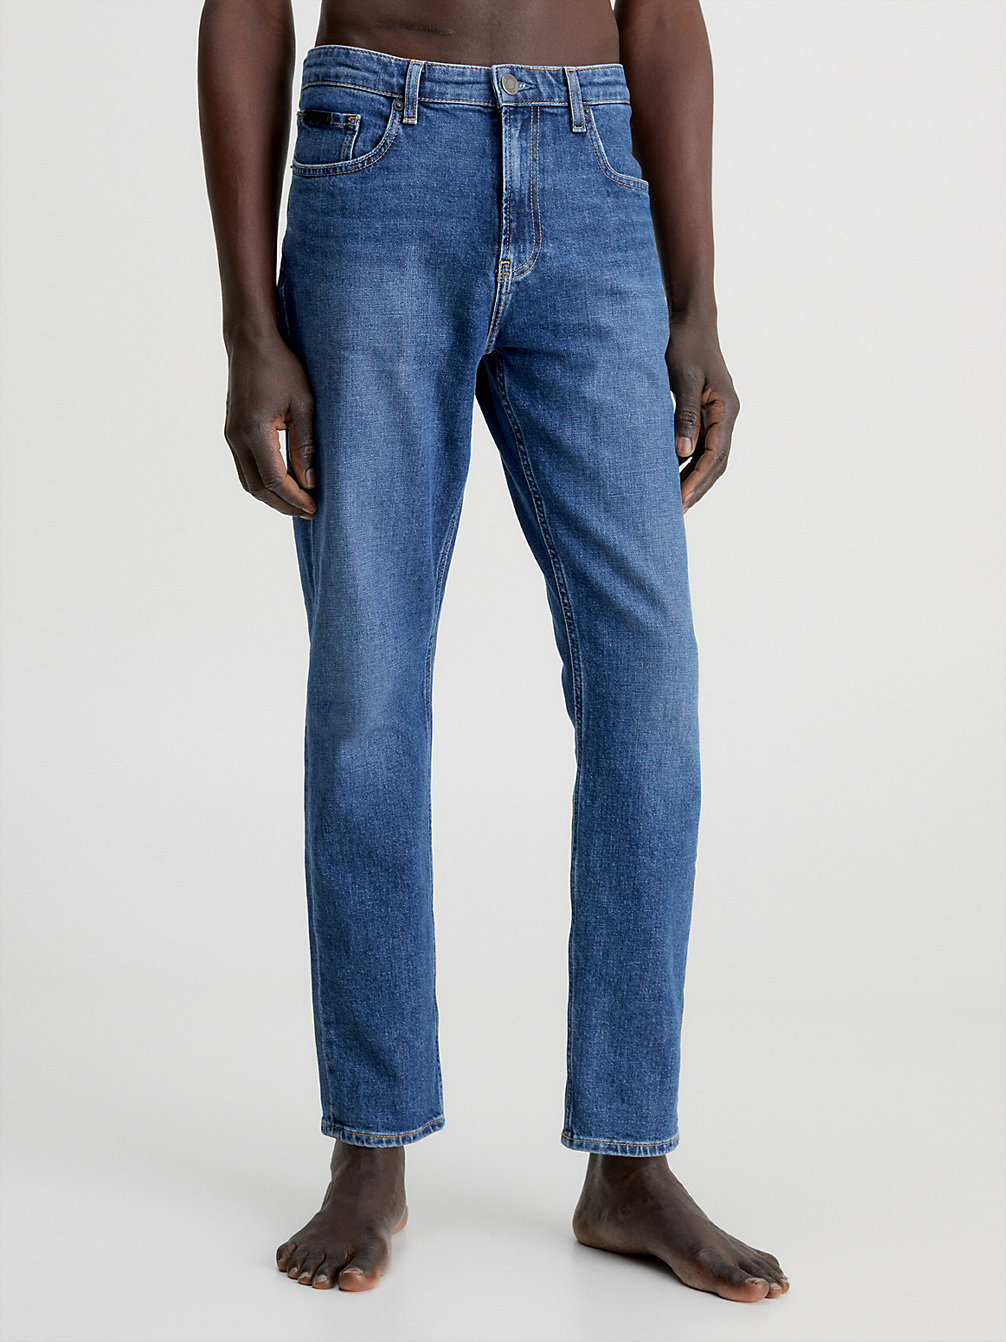 DENIM > Cropped Jeans > undefined Herren - Calvin Klein